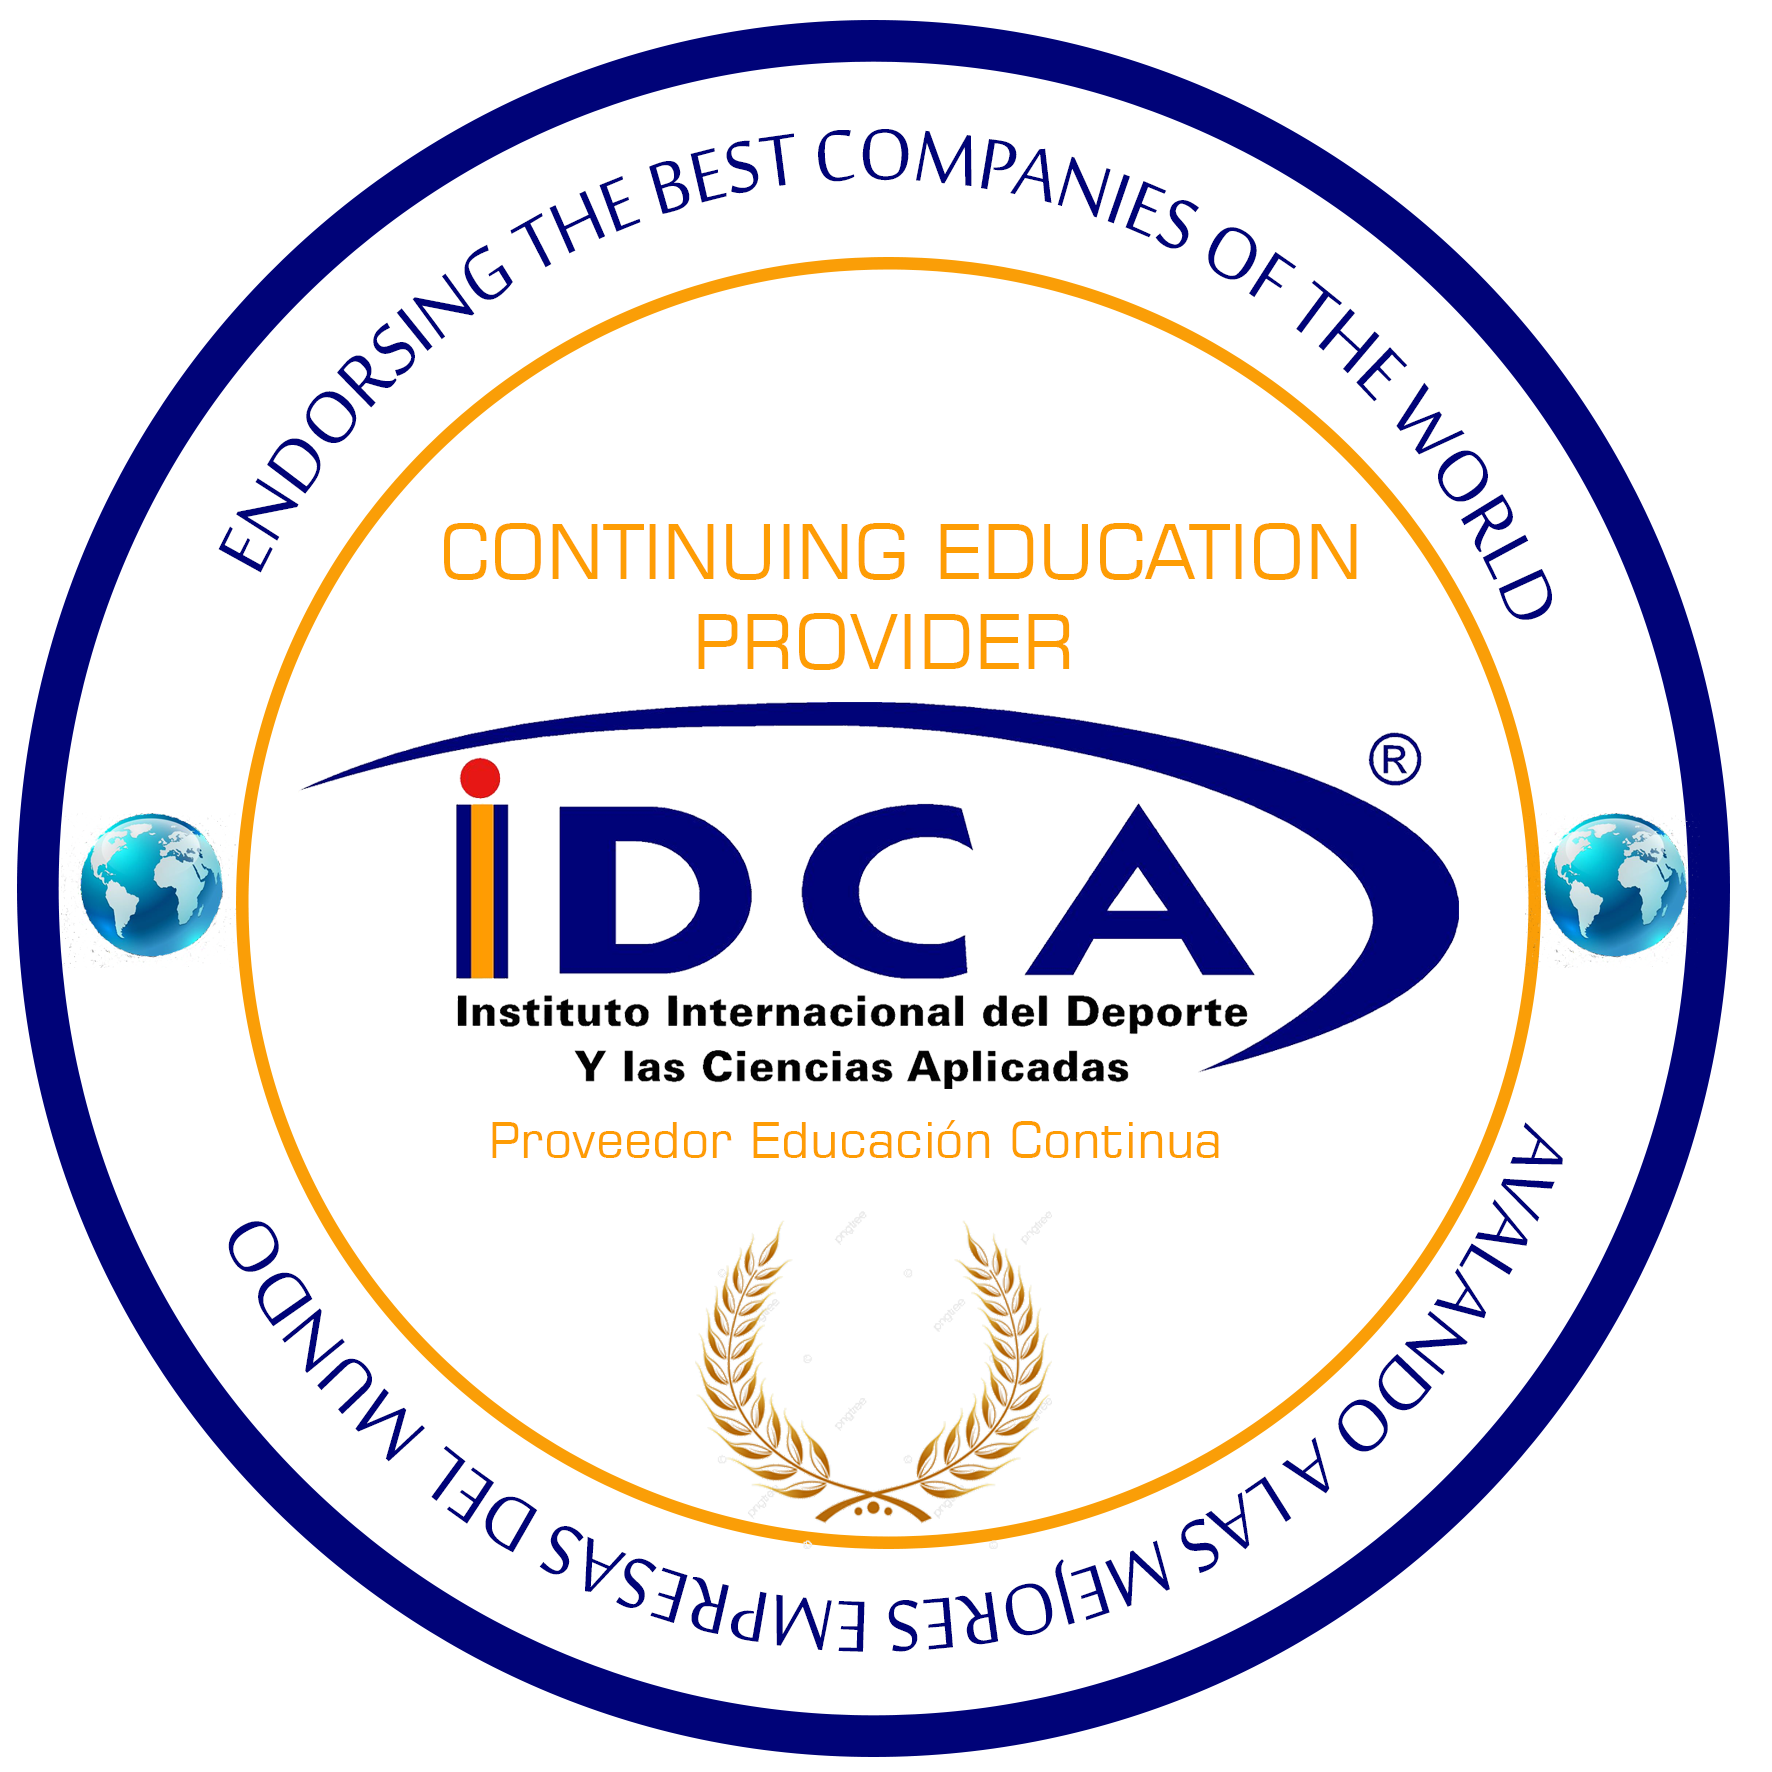 Nuevos Logos IIDCA Educacion Continua